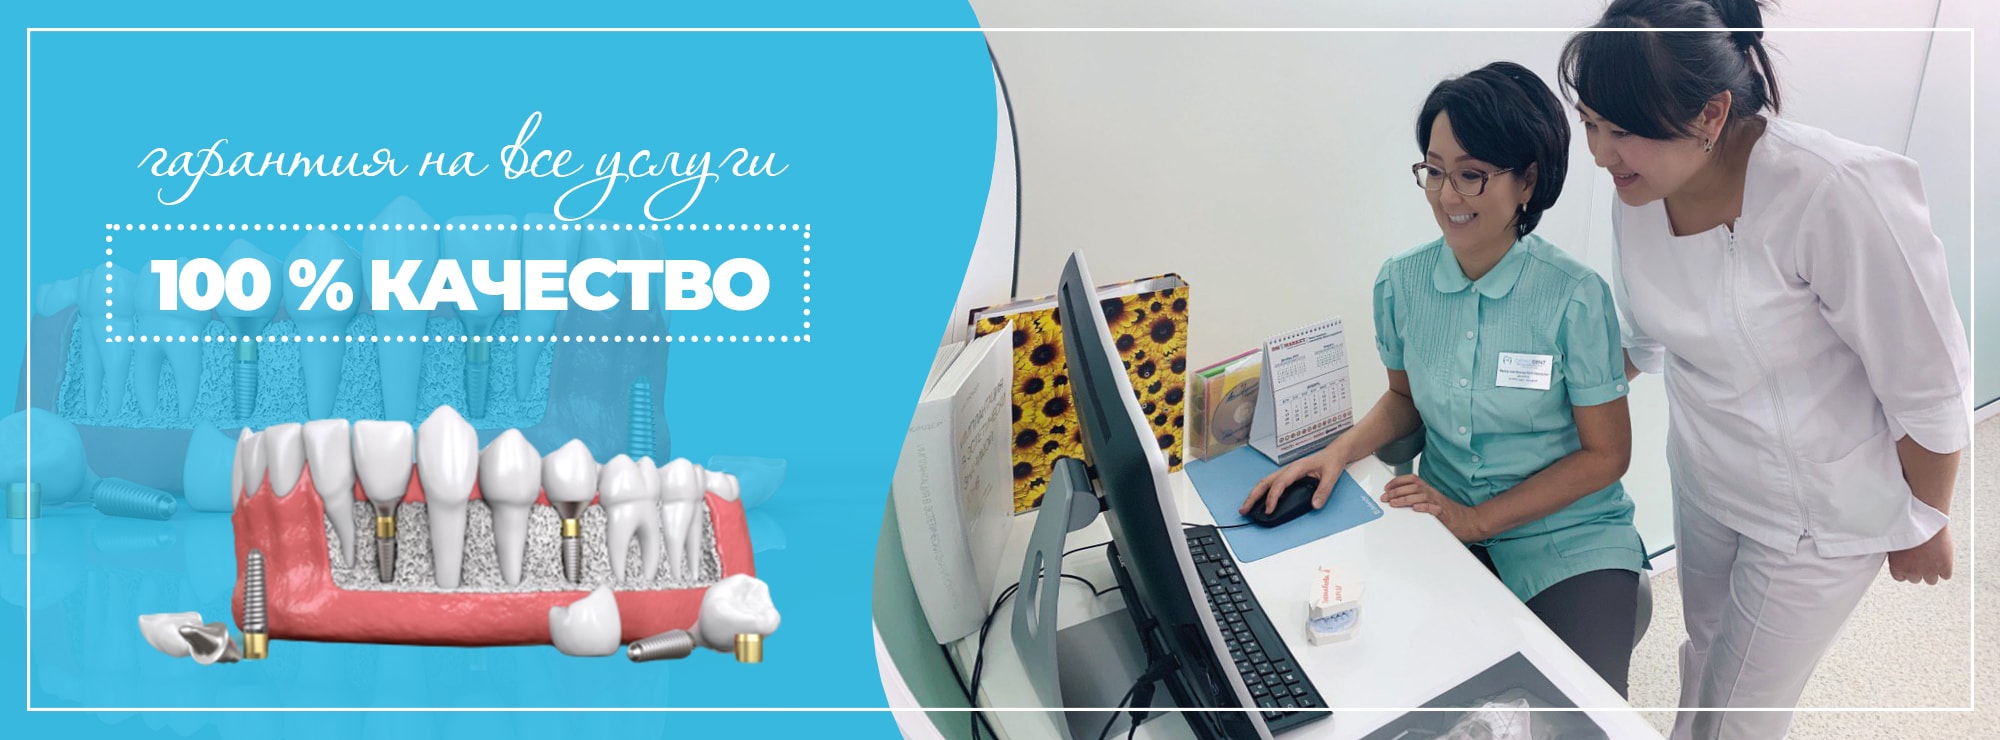 Ортодонтология в Алматы